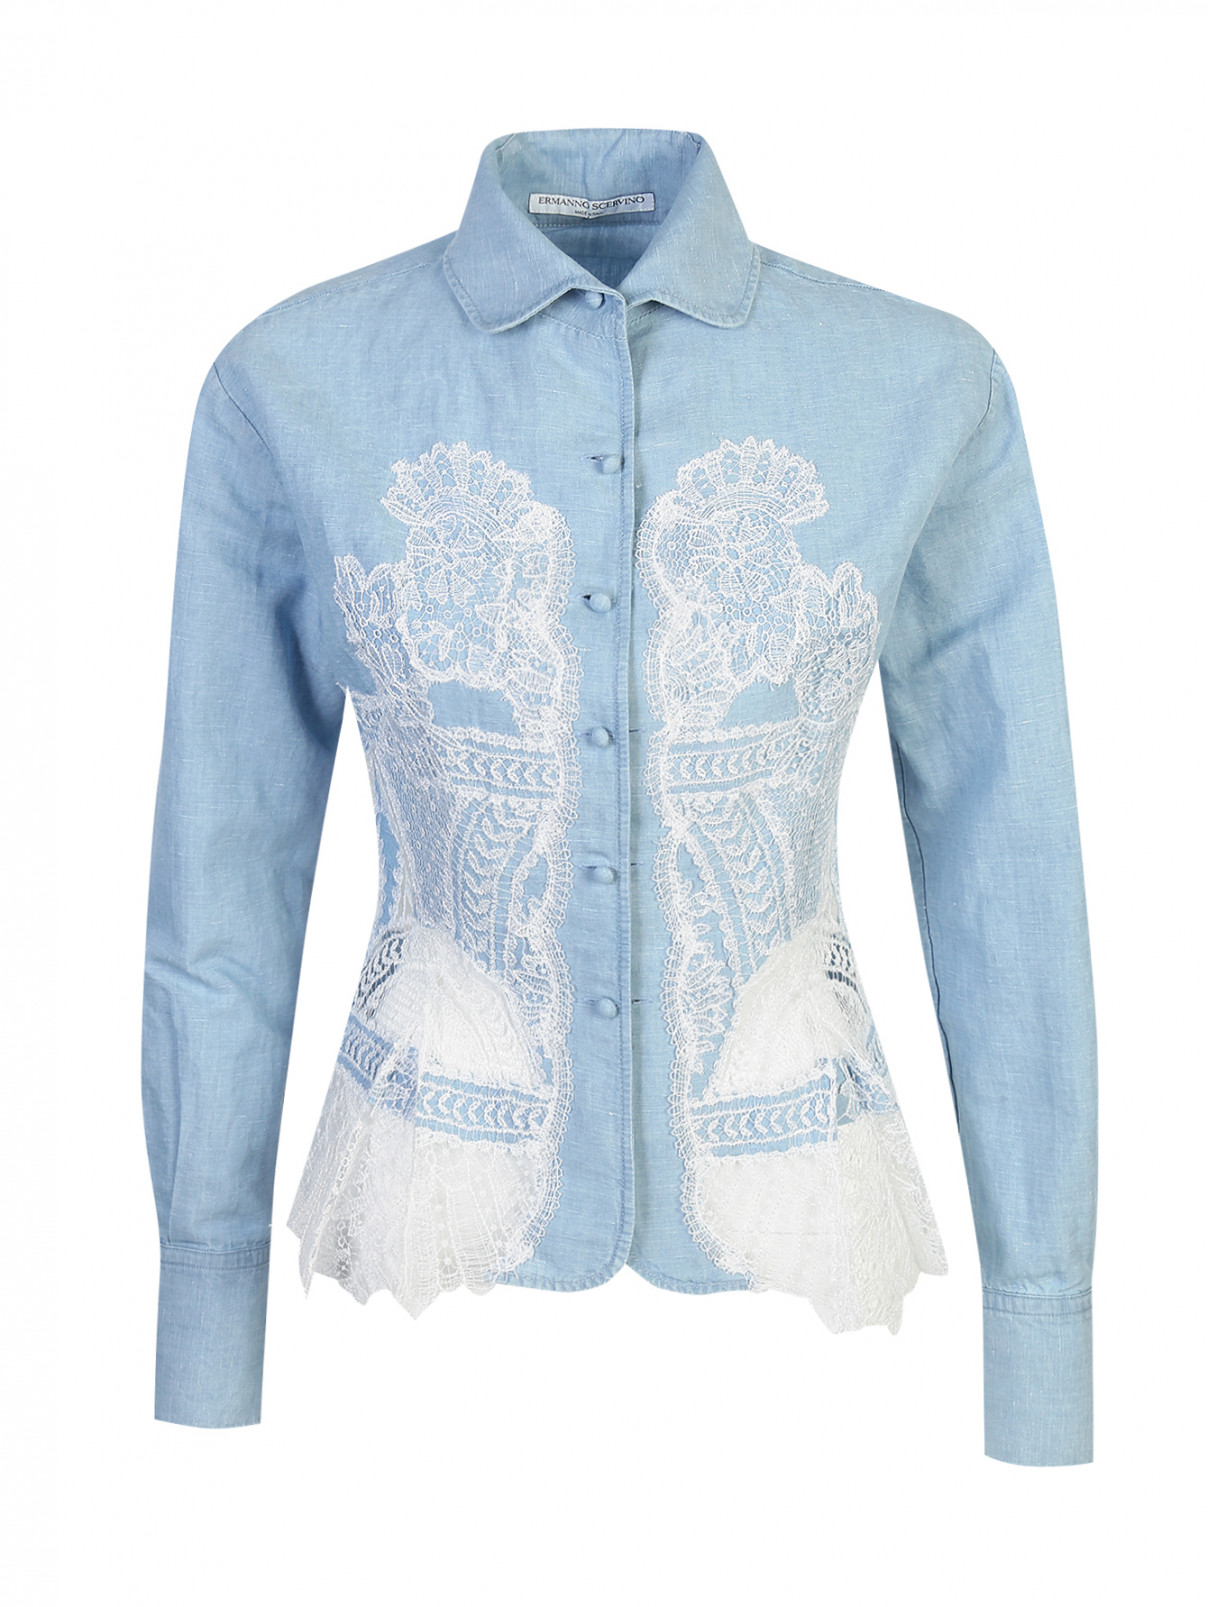 Блуза из хлопка и льна с кружевом Ermanno Scervino  –  Общий вид  – Цвет:  Синий